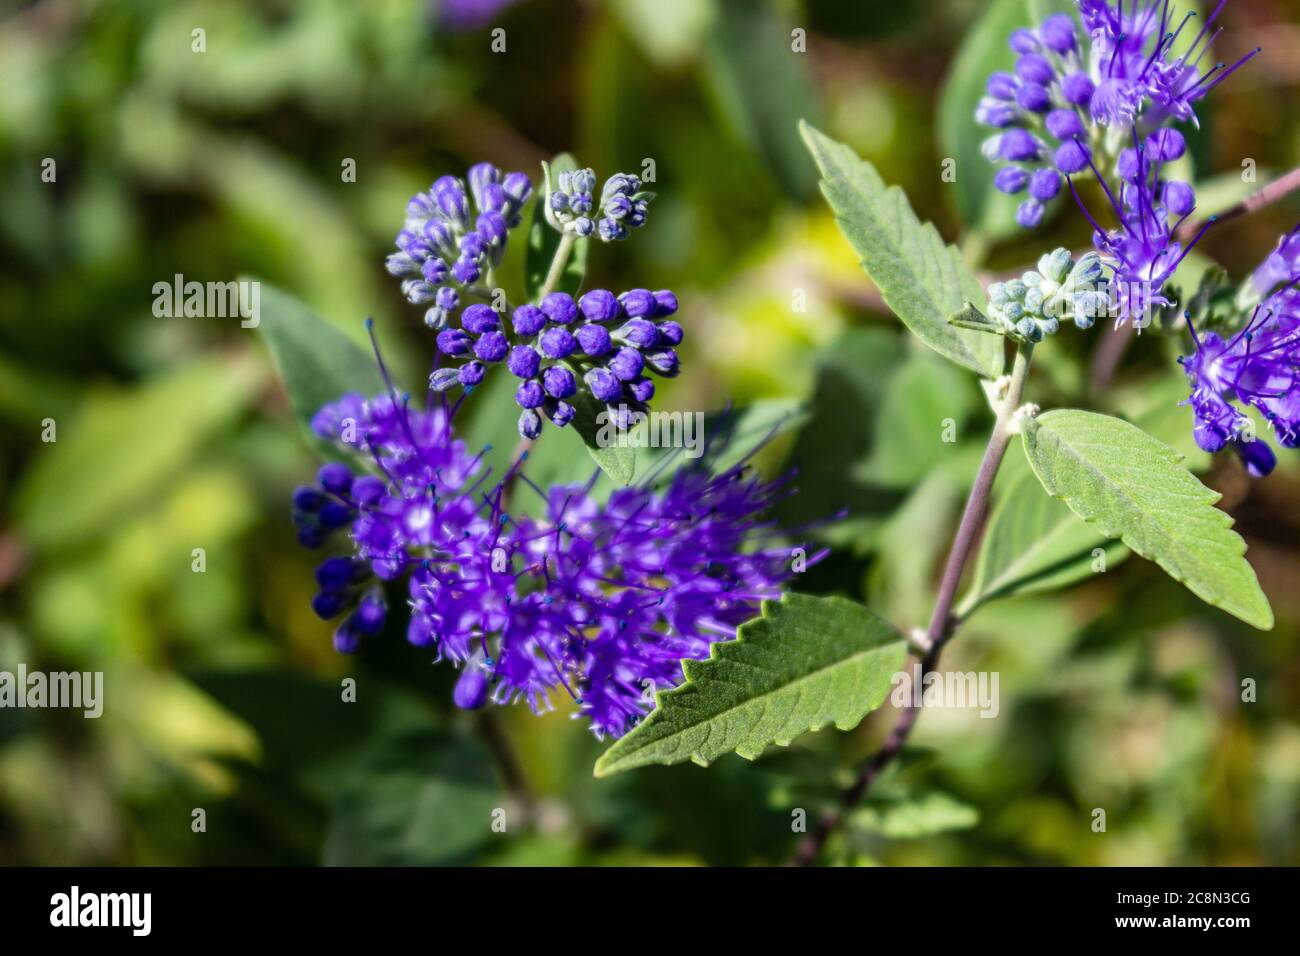 Fiore viola con foglie verdi. Phacelia tanacetifolia è una specie di phacelia conosciuta con i nomi comuni Lacy phacelia, tansy blu o tansy viola. B Foto Stock